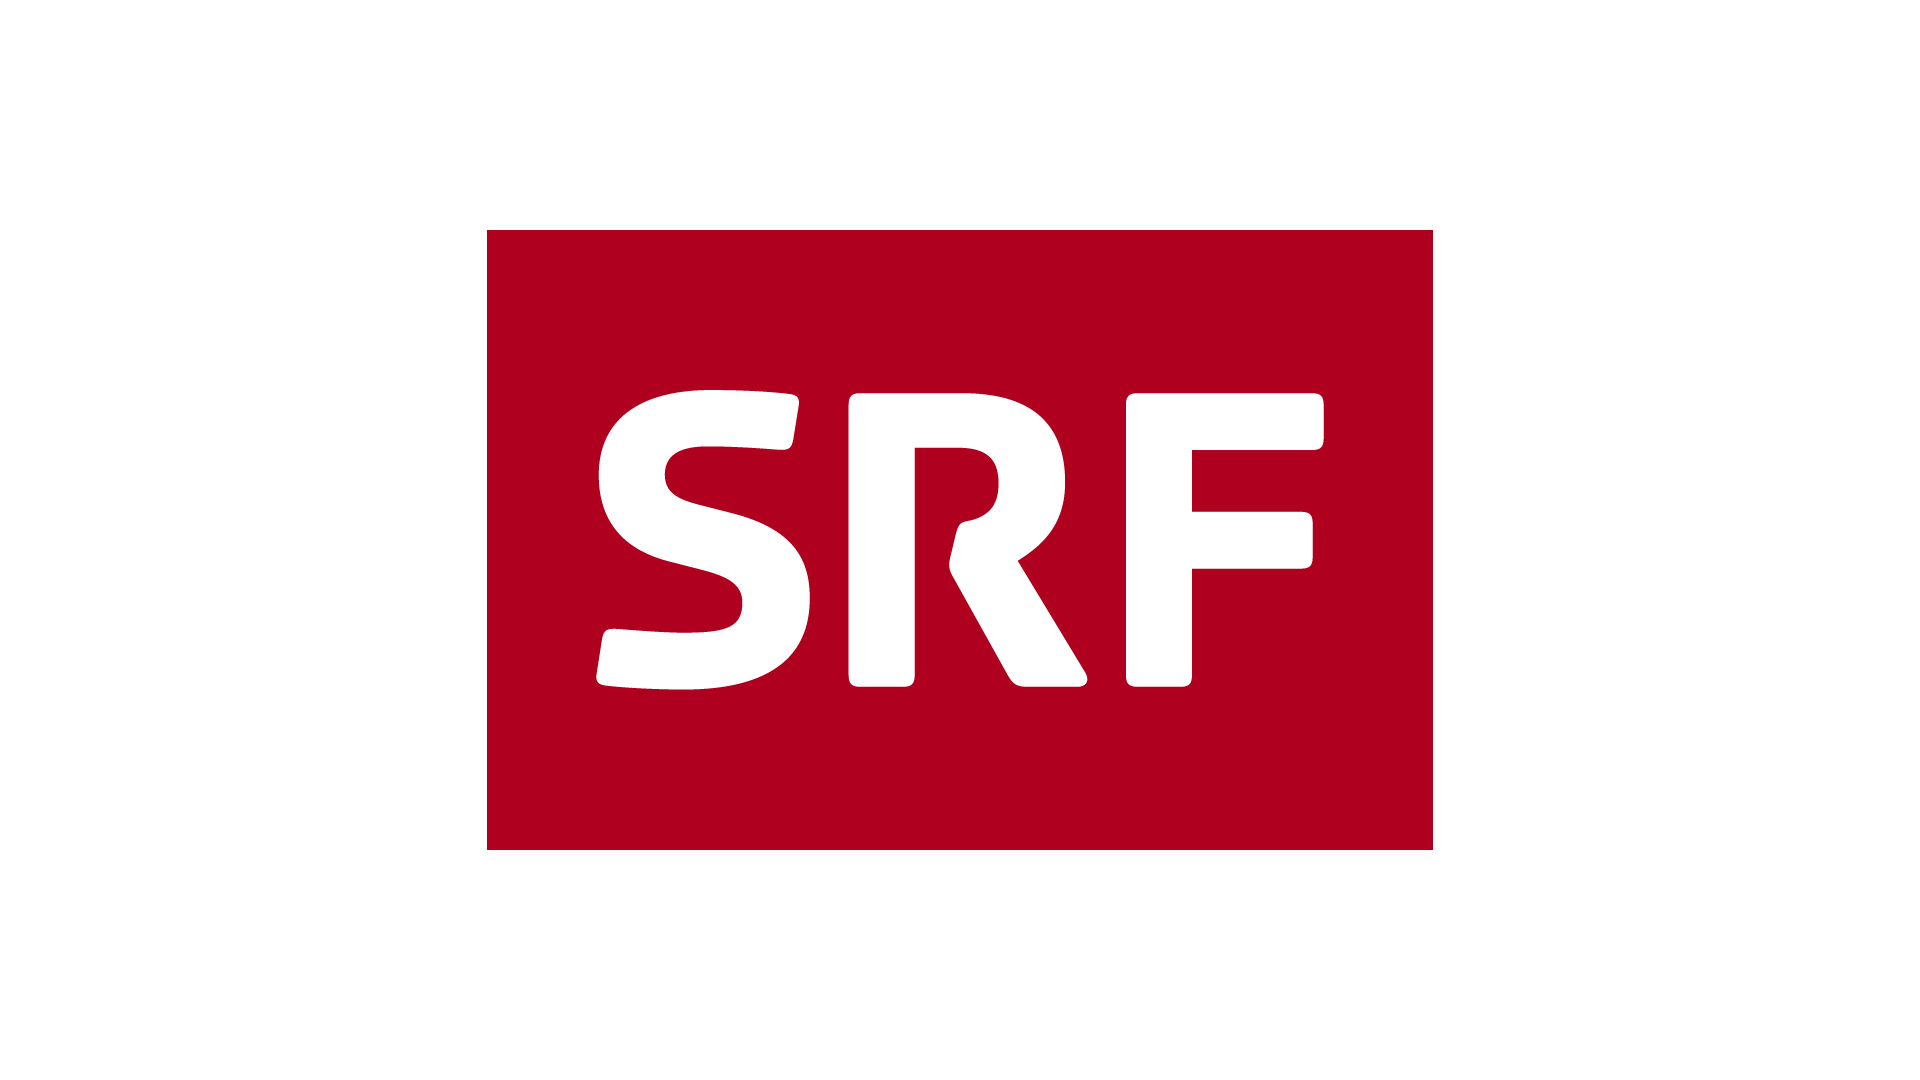 La SRF suiza confirma su participación en Eurovisión 2022